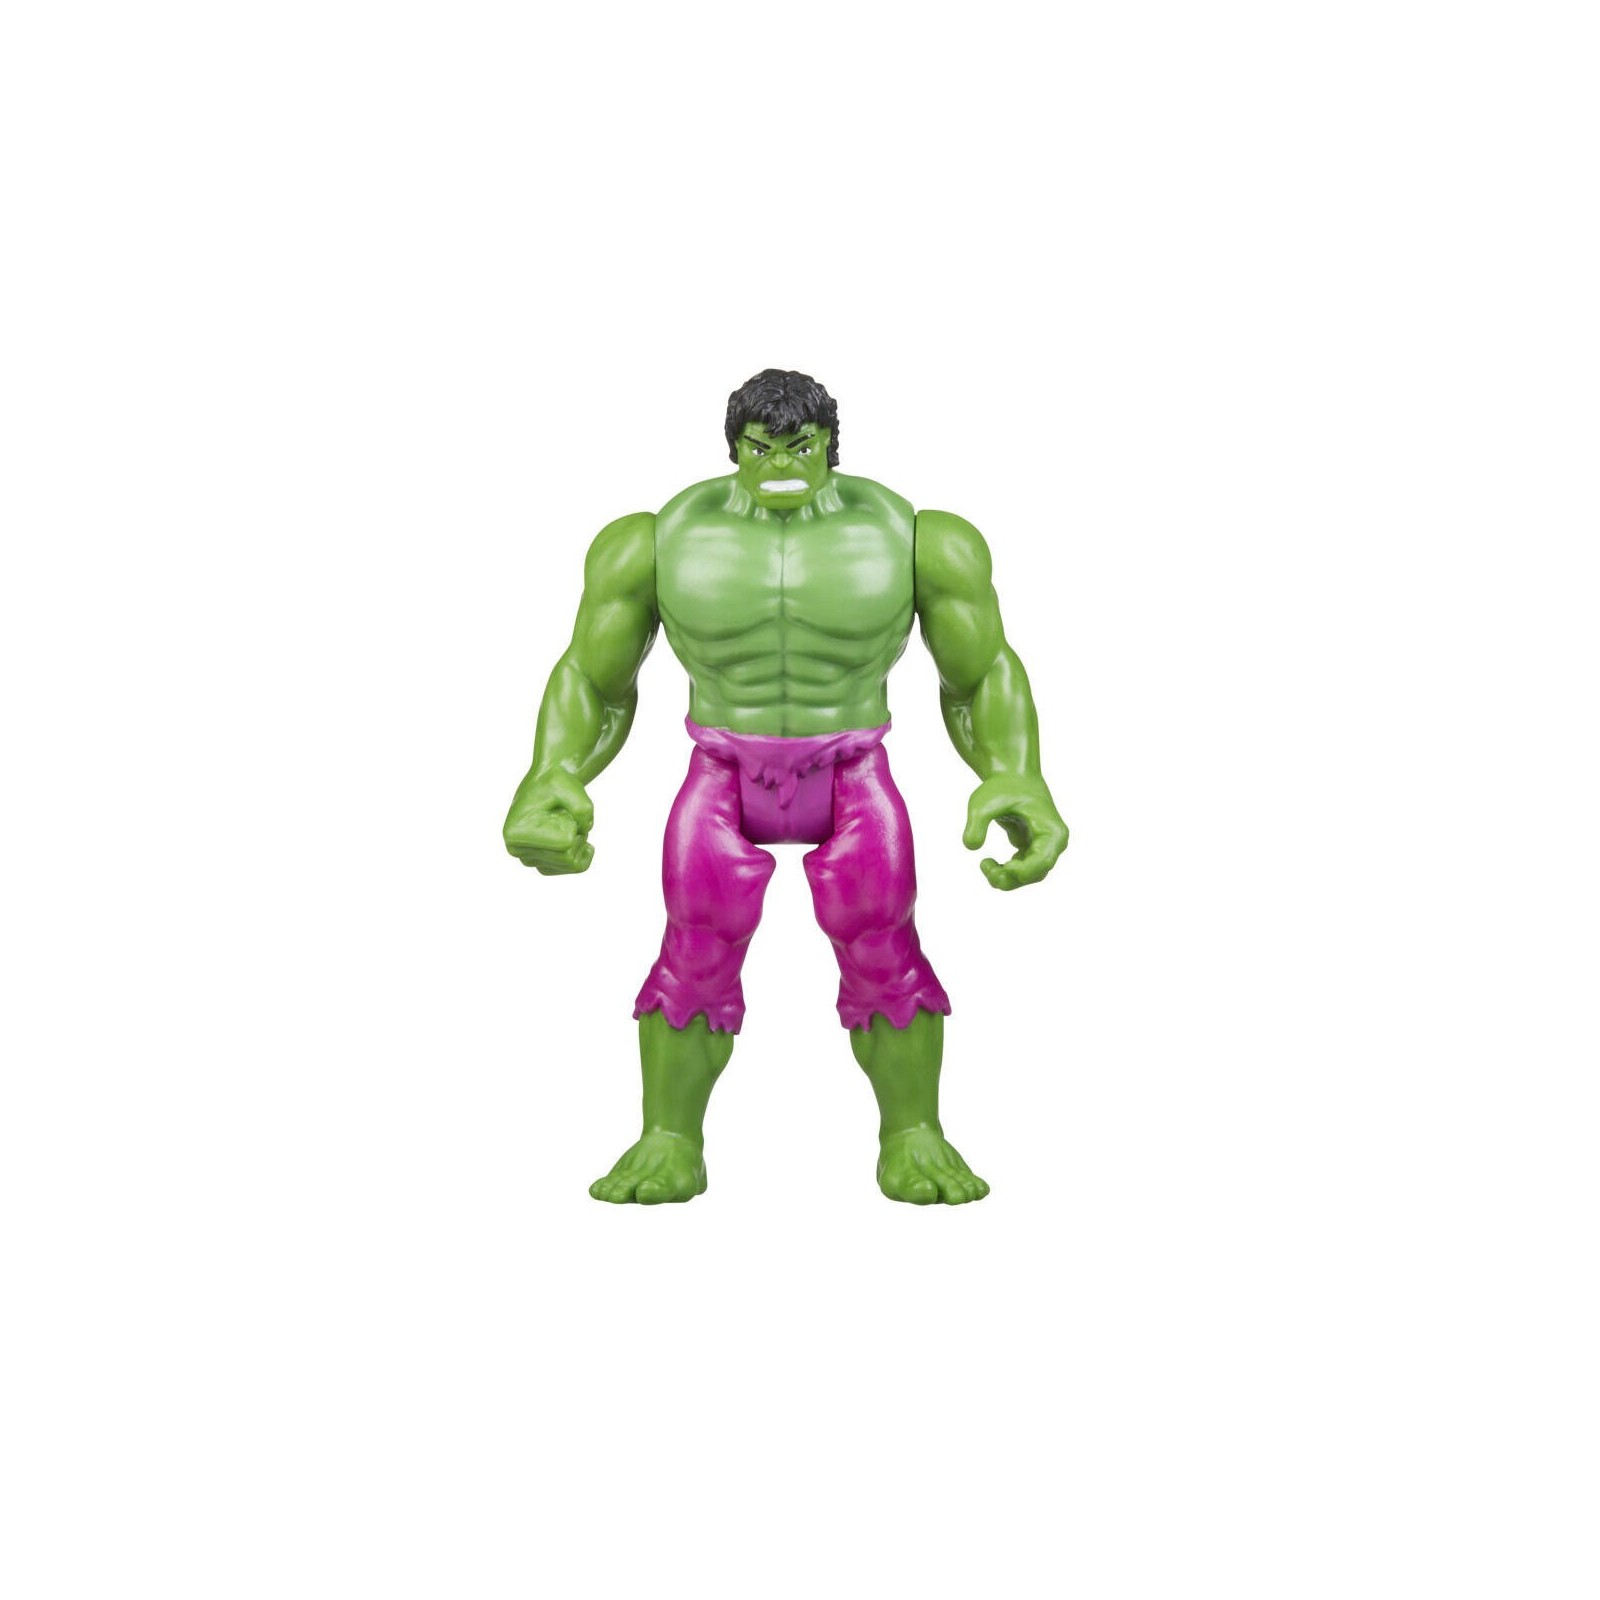 Figura Hasbro Marvel Legends Hulk Colección Retro 375